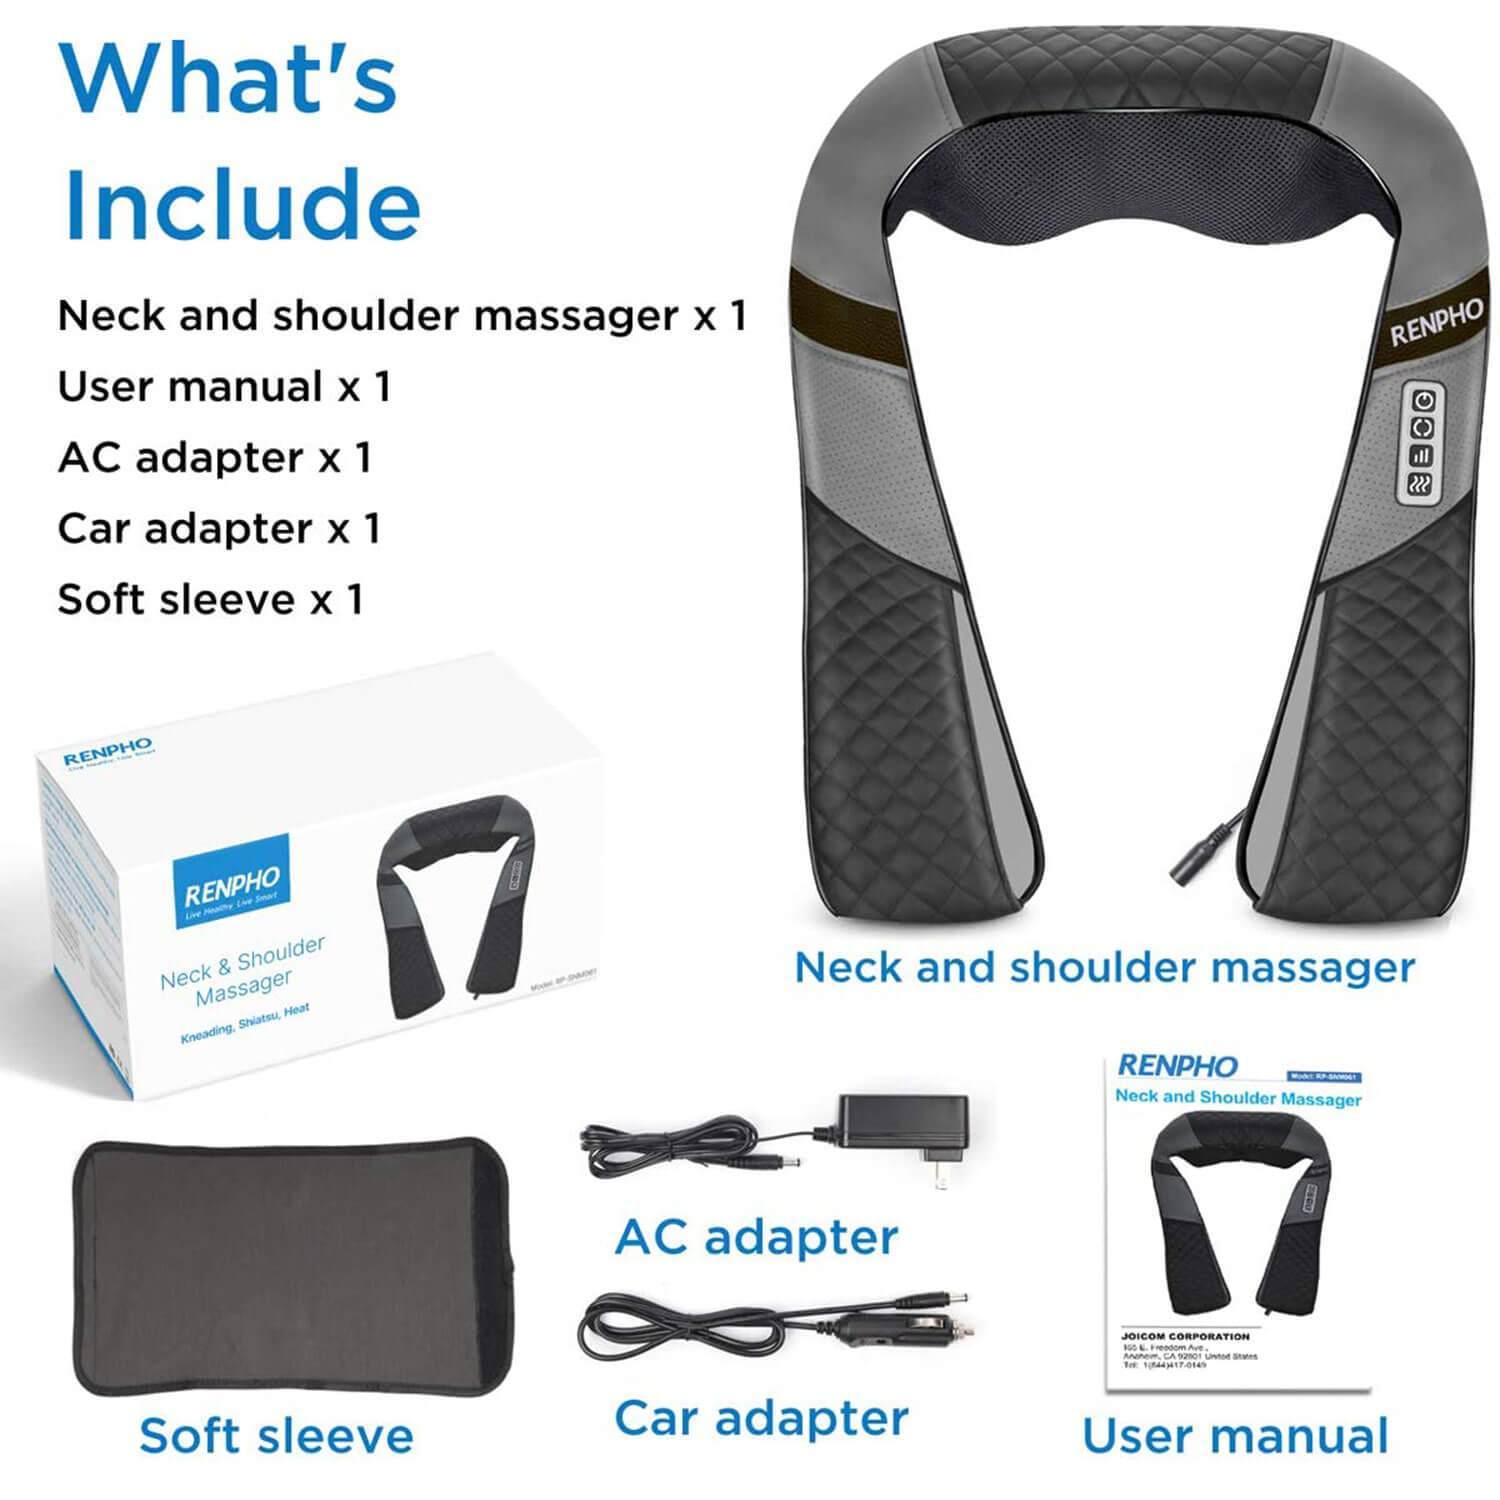 Bild eines U-Neck 2 Nacken- und Schultermassagegerät-Kits von Renpho DE. Enthält das Massagegerät, eine Bedienungsanleitung, ein Netzteil, einen Autoadapter und eine weiche Hülle. Das Massagegerät